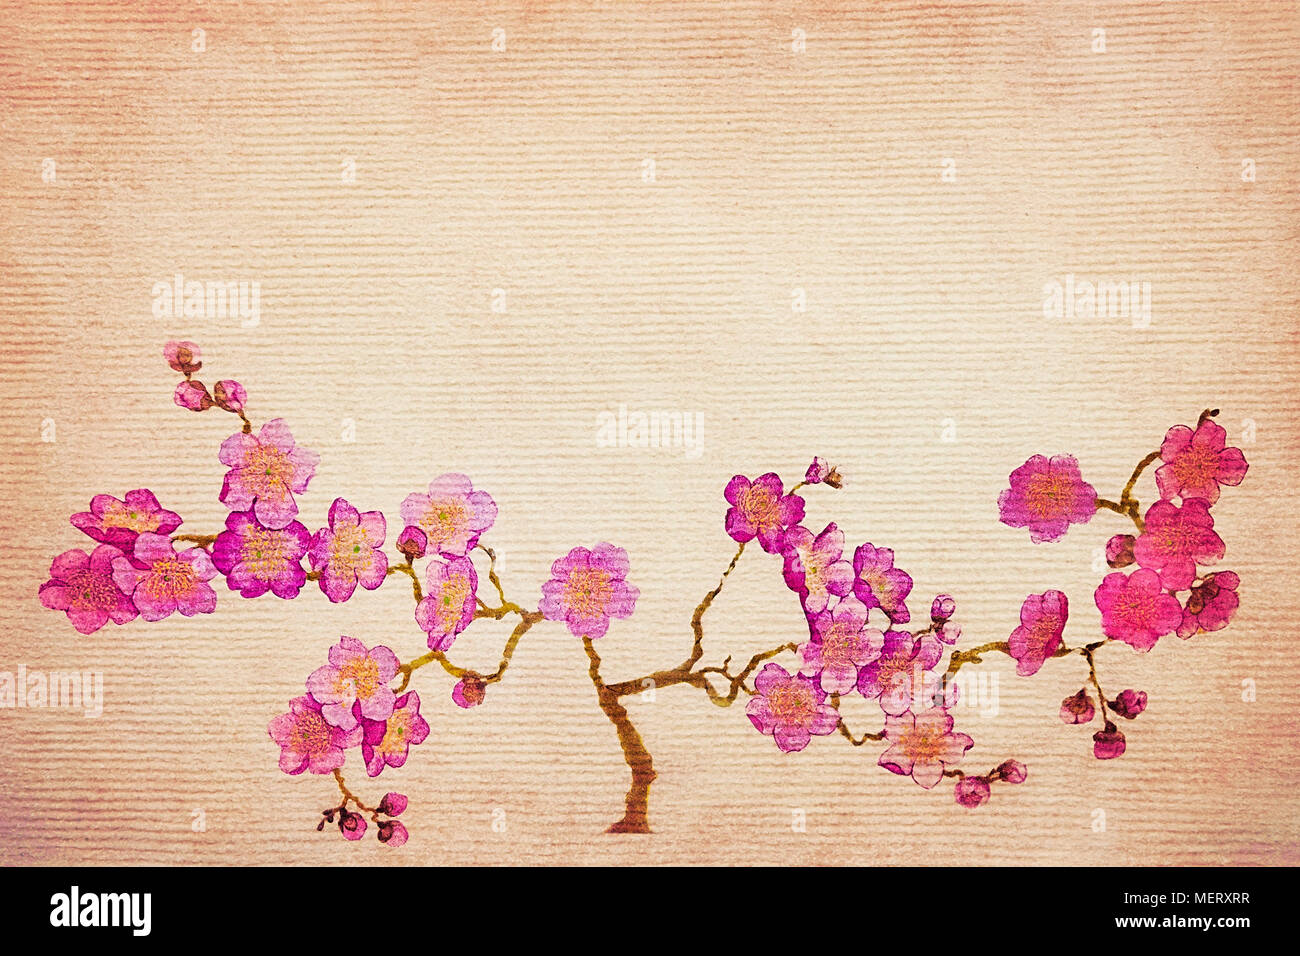 Vintage grunge background avec des cerisiers en fleur au printemps. Banque D'Images